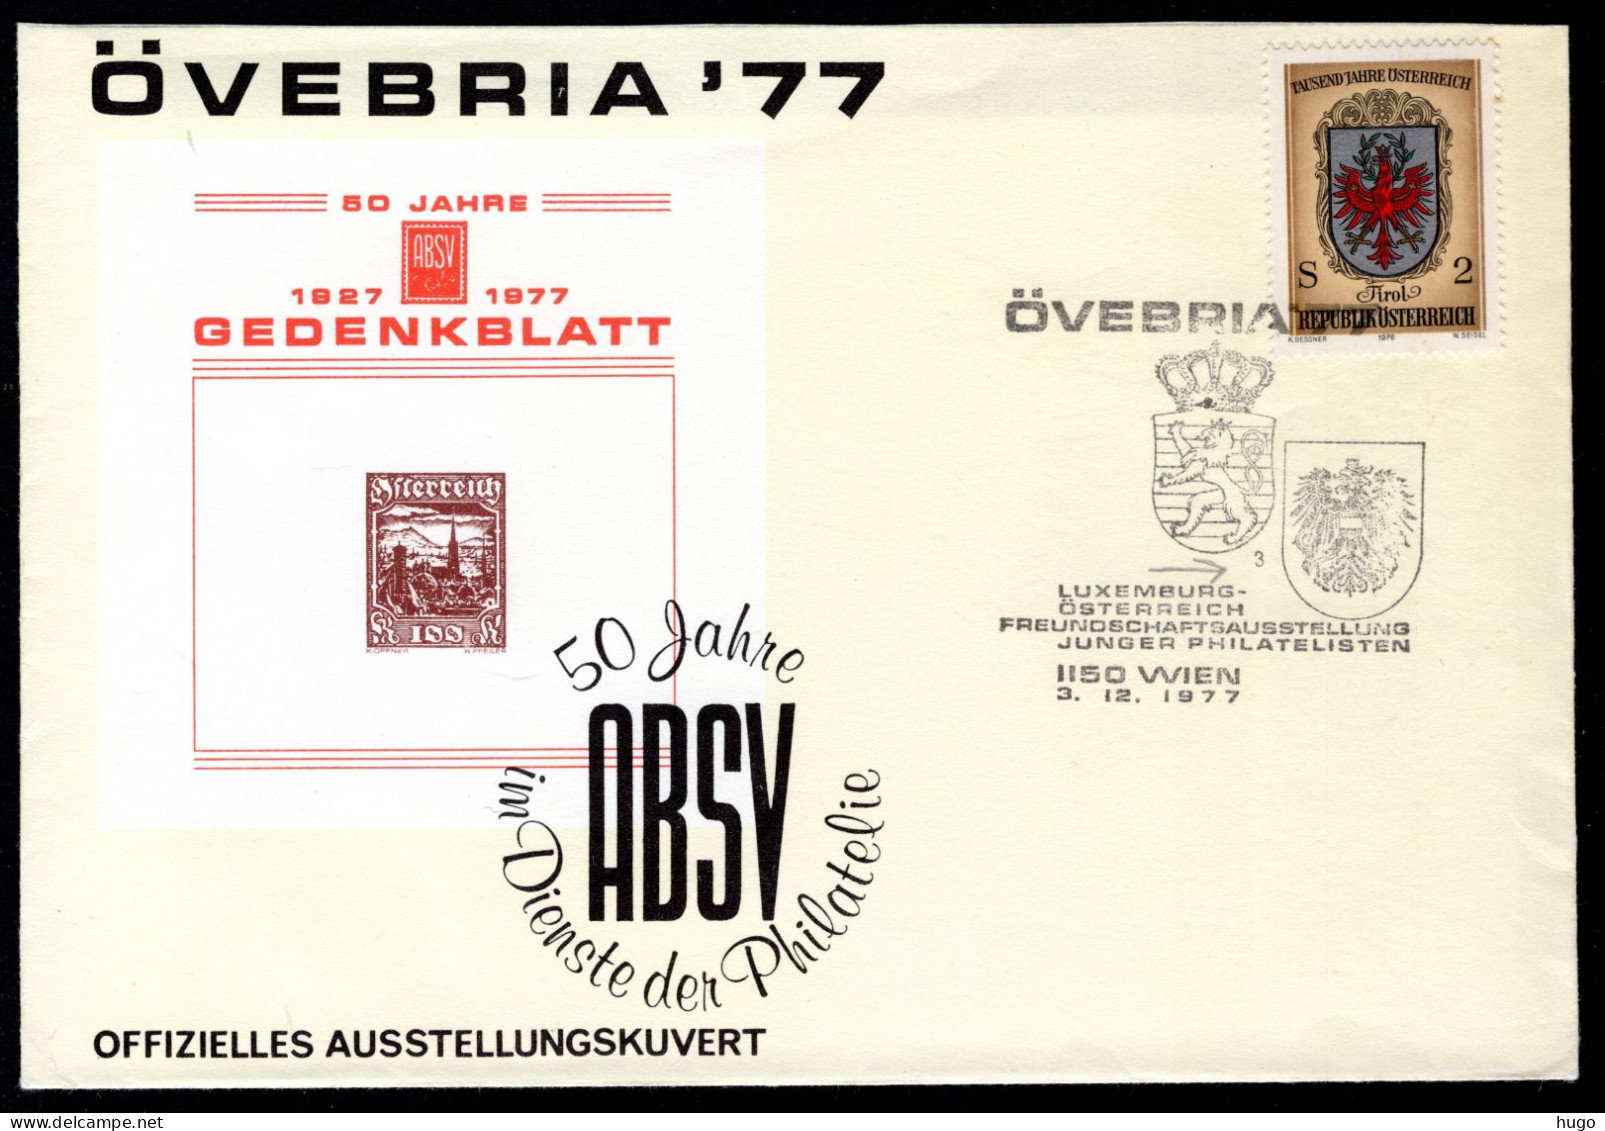 OOSTENRIJK Yt. Luxemburg - Osterreich Freundschaft 3-12-1977 ÖVEBRIA '77 - Lettres & Documents